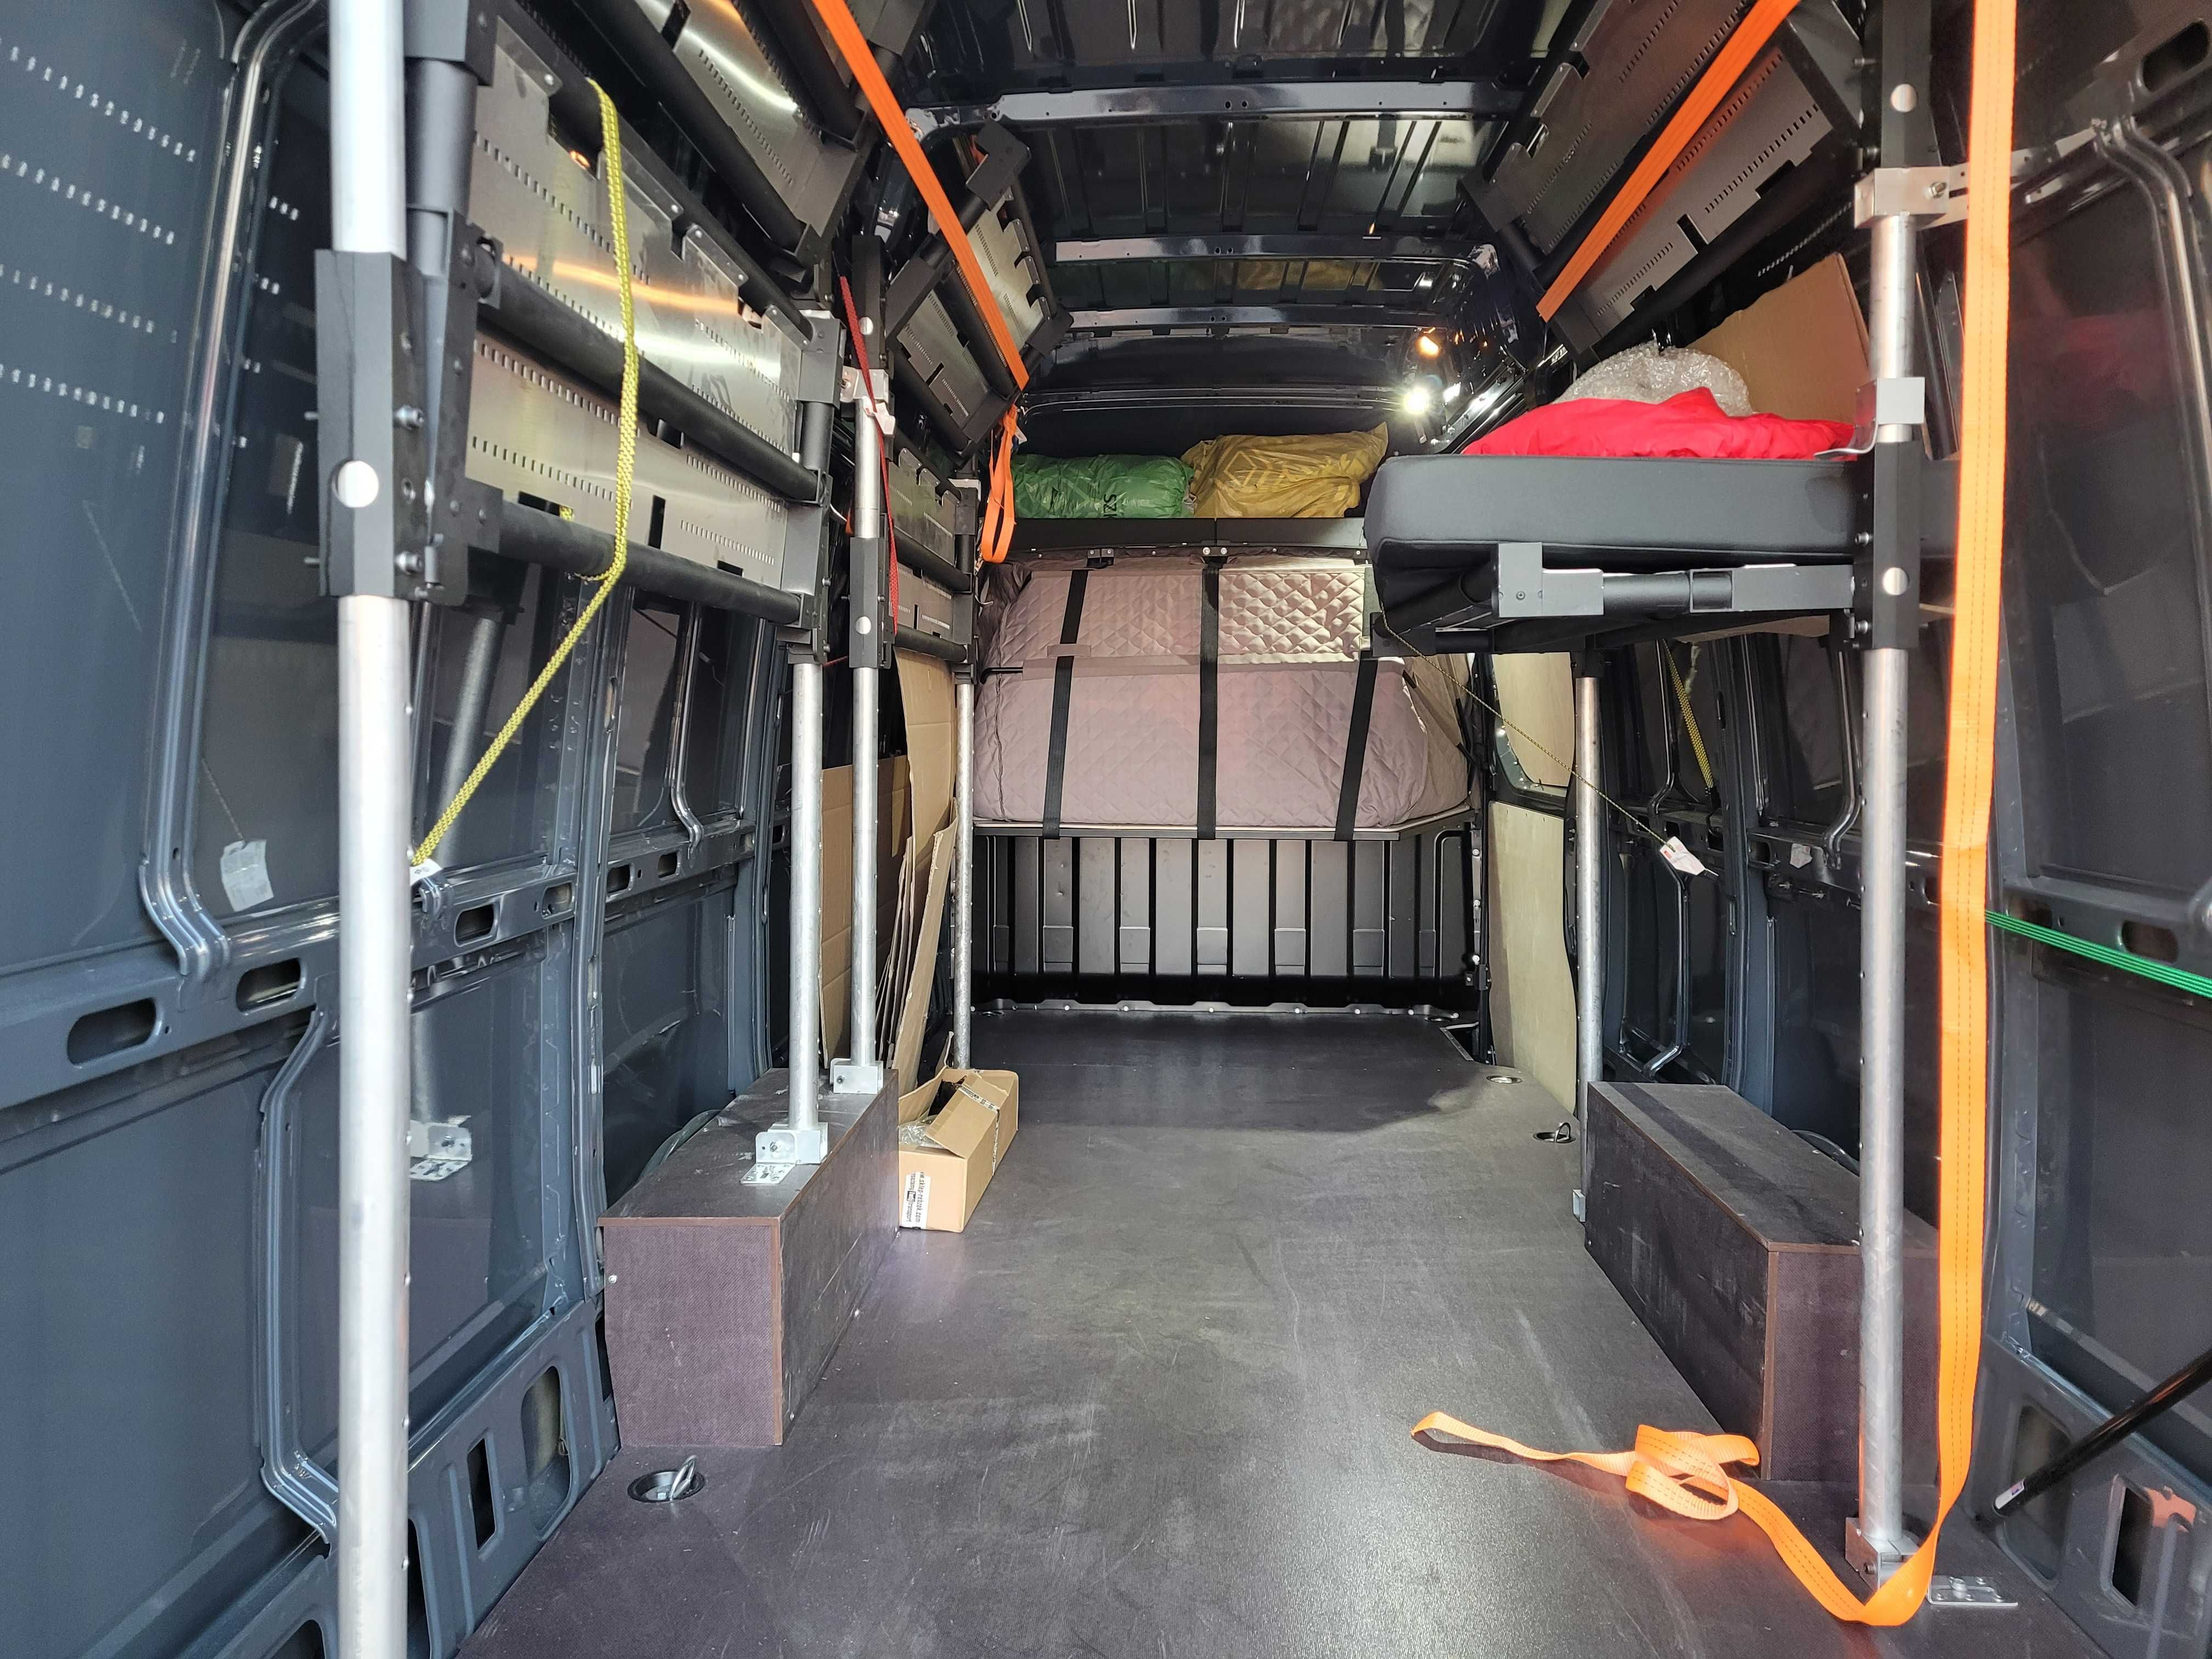 Składane łóżko do busa, kabina sypialna w busie, łóżko w busie furgon